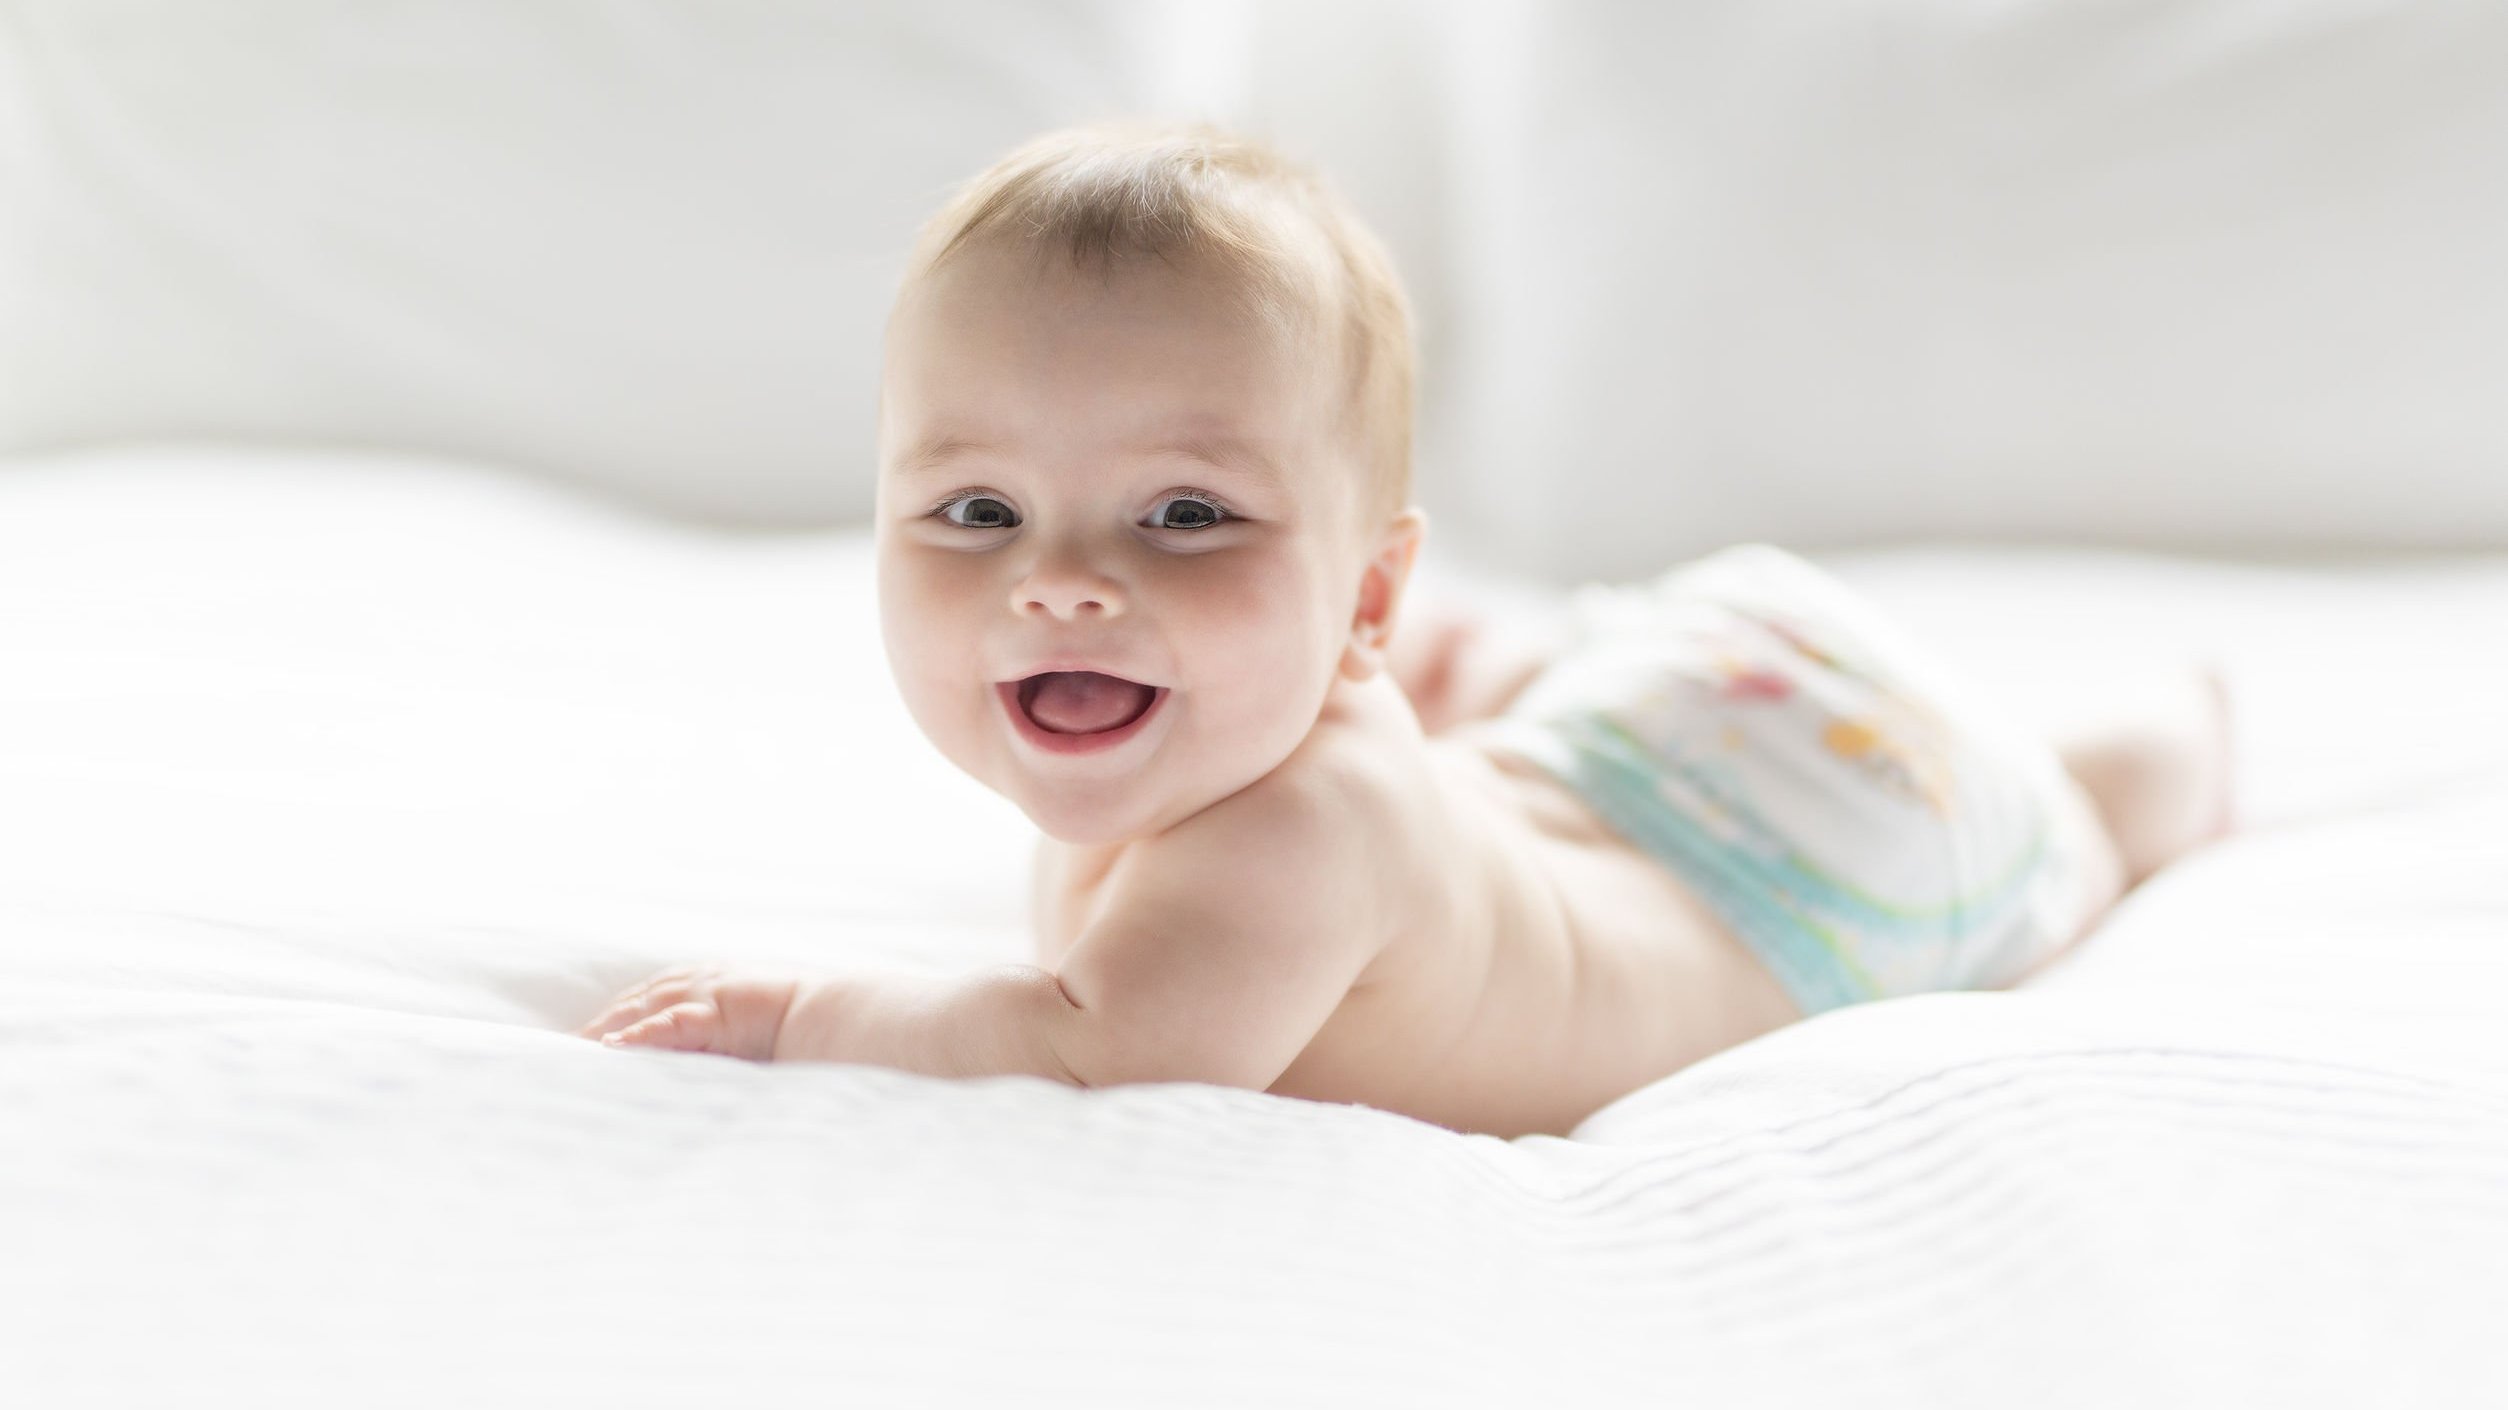 Bebê de 7 meses usando fraldas, deitado de bruços em uma cama enquanto sorri.